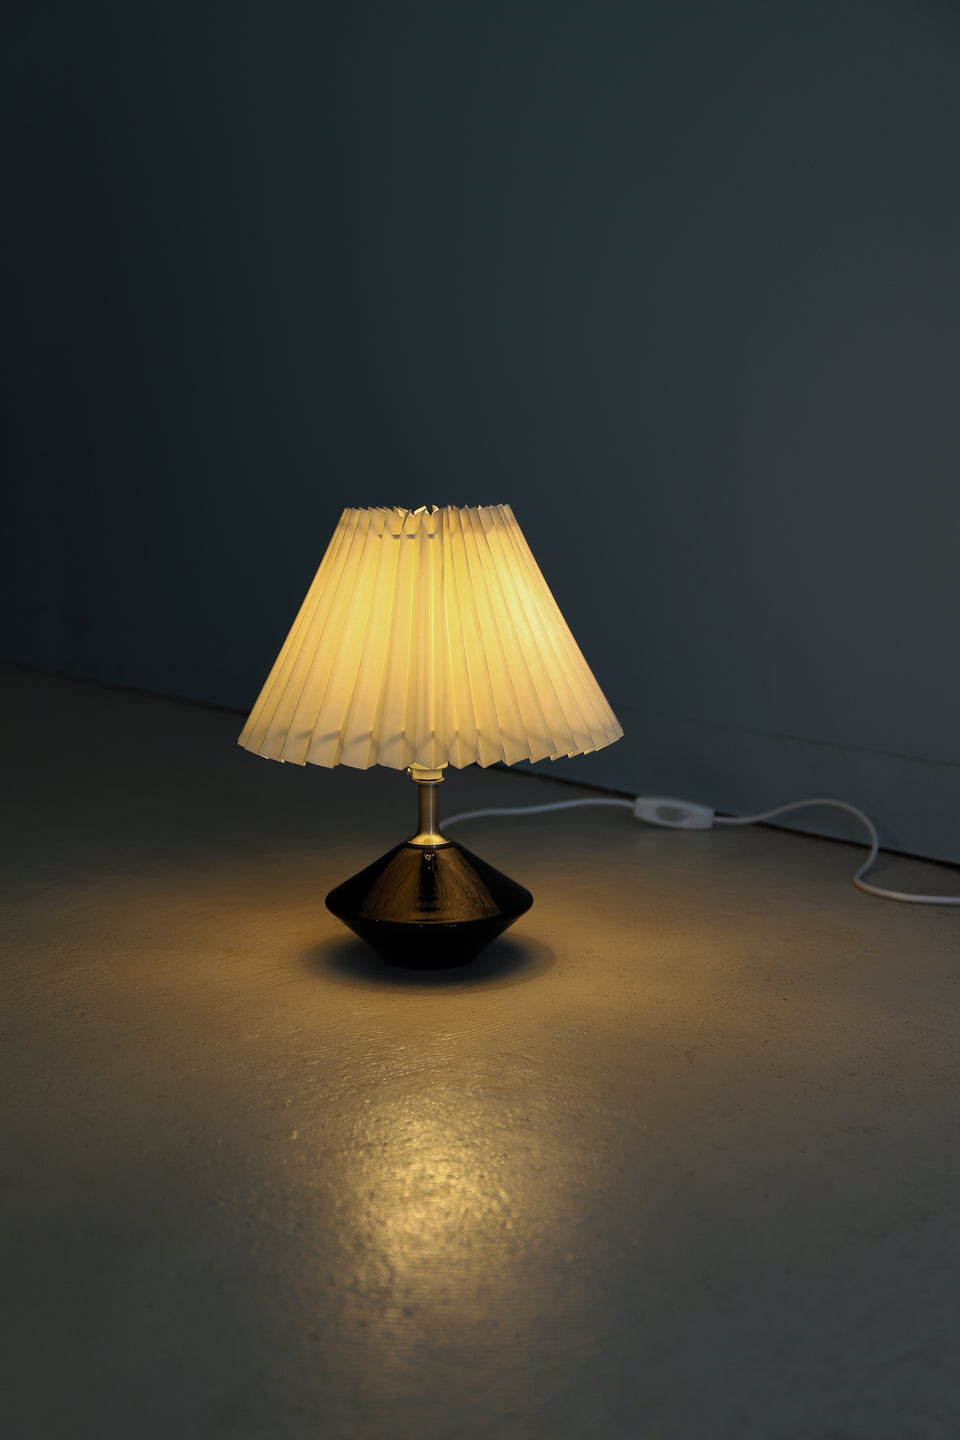 Holmegaard Astro Table Lamp Danish Vintage/デンマークヴィンテージ ホルムガード テーブルランプ アストロ 間接照明 北欧インテリア